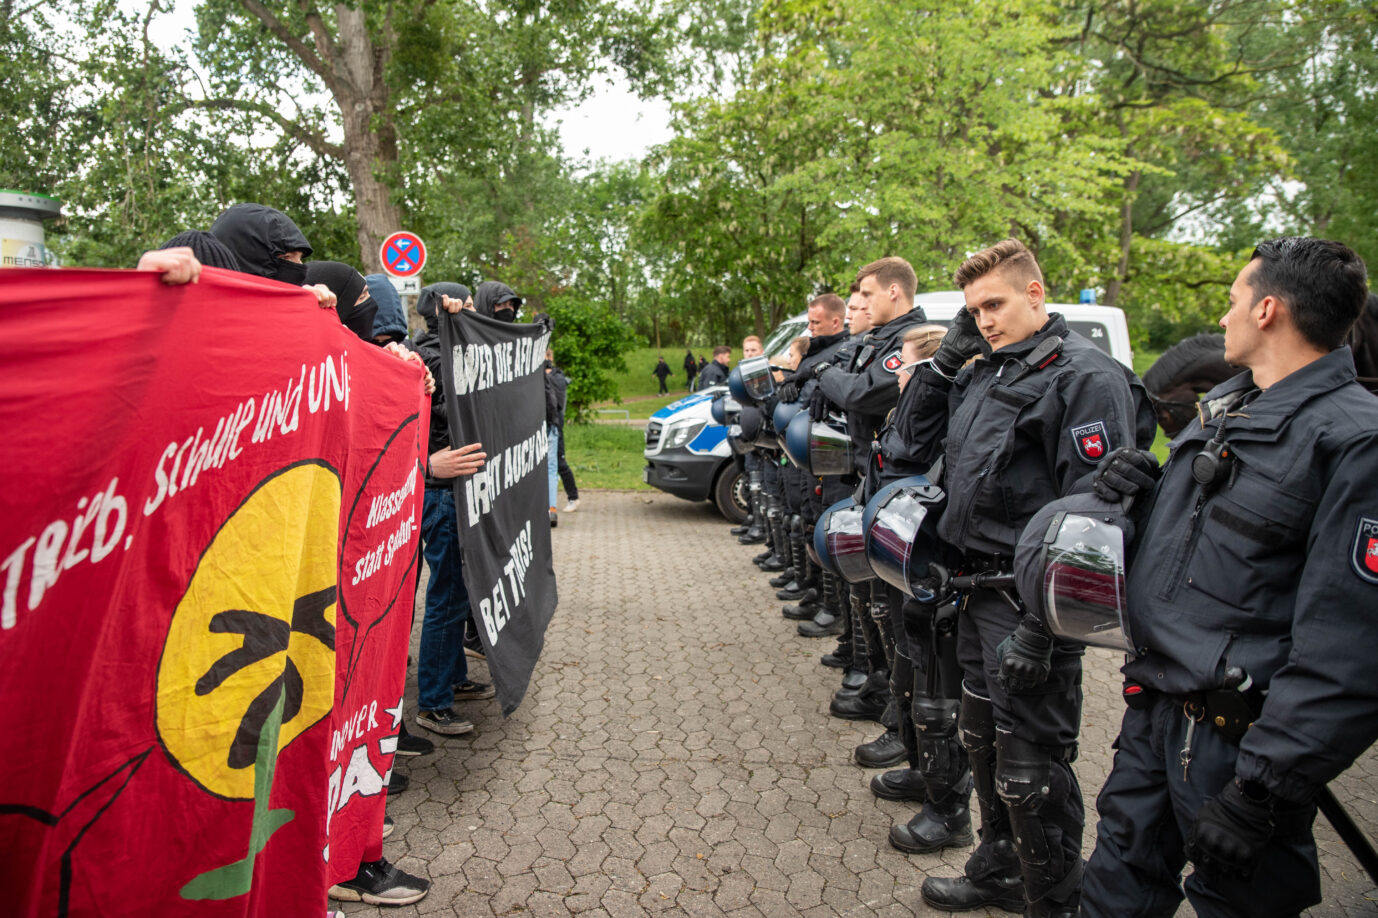 Auf dem Foto befindet sich ein Antifa-Protest gegen den AfD-Parteitag Niedersachsen im Jahr 2022. (Themenbild/Symbolbild)